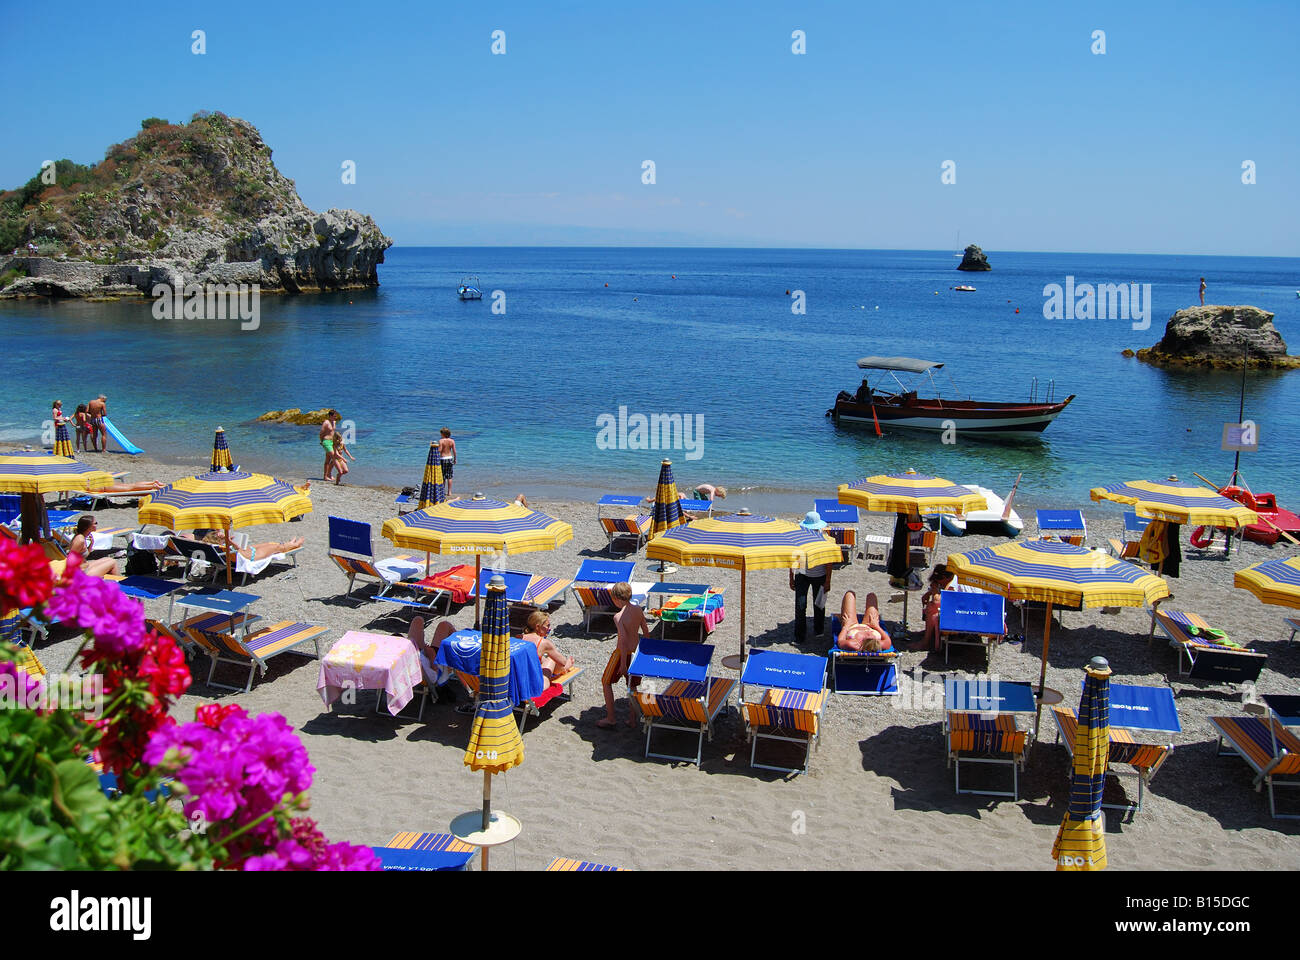 Mazzaro Beach, Taormina, Messina Province, Sicily, Italy Stock Photo